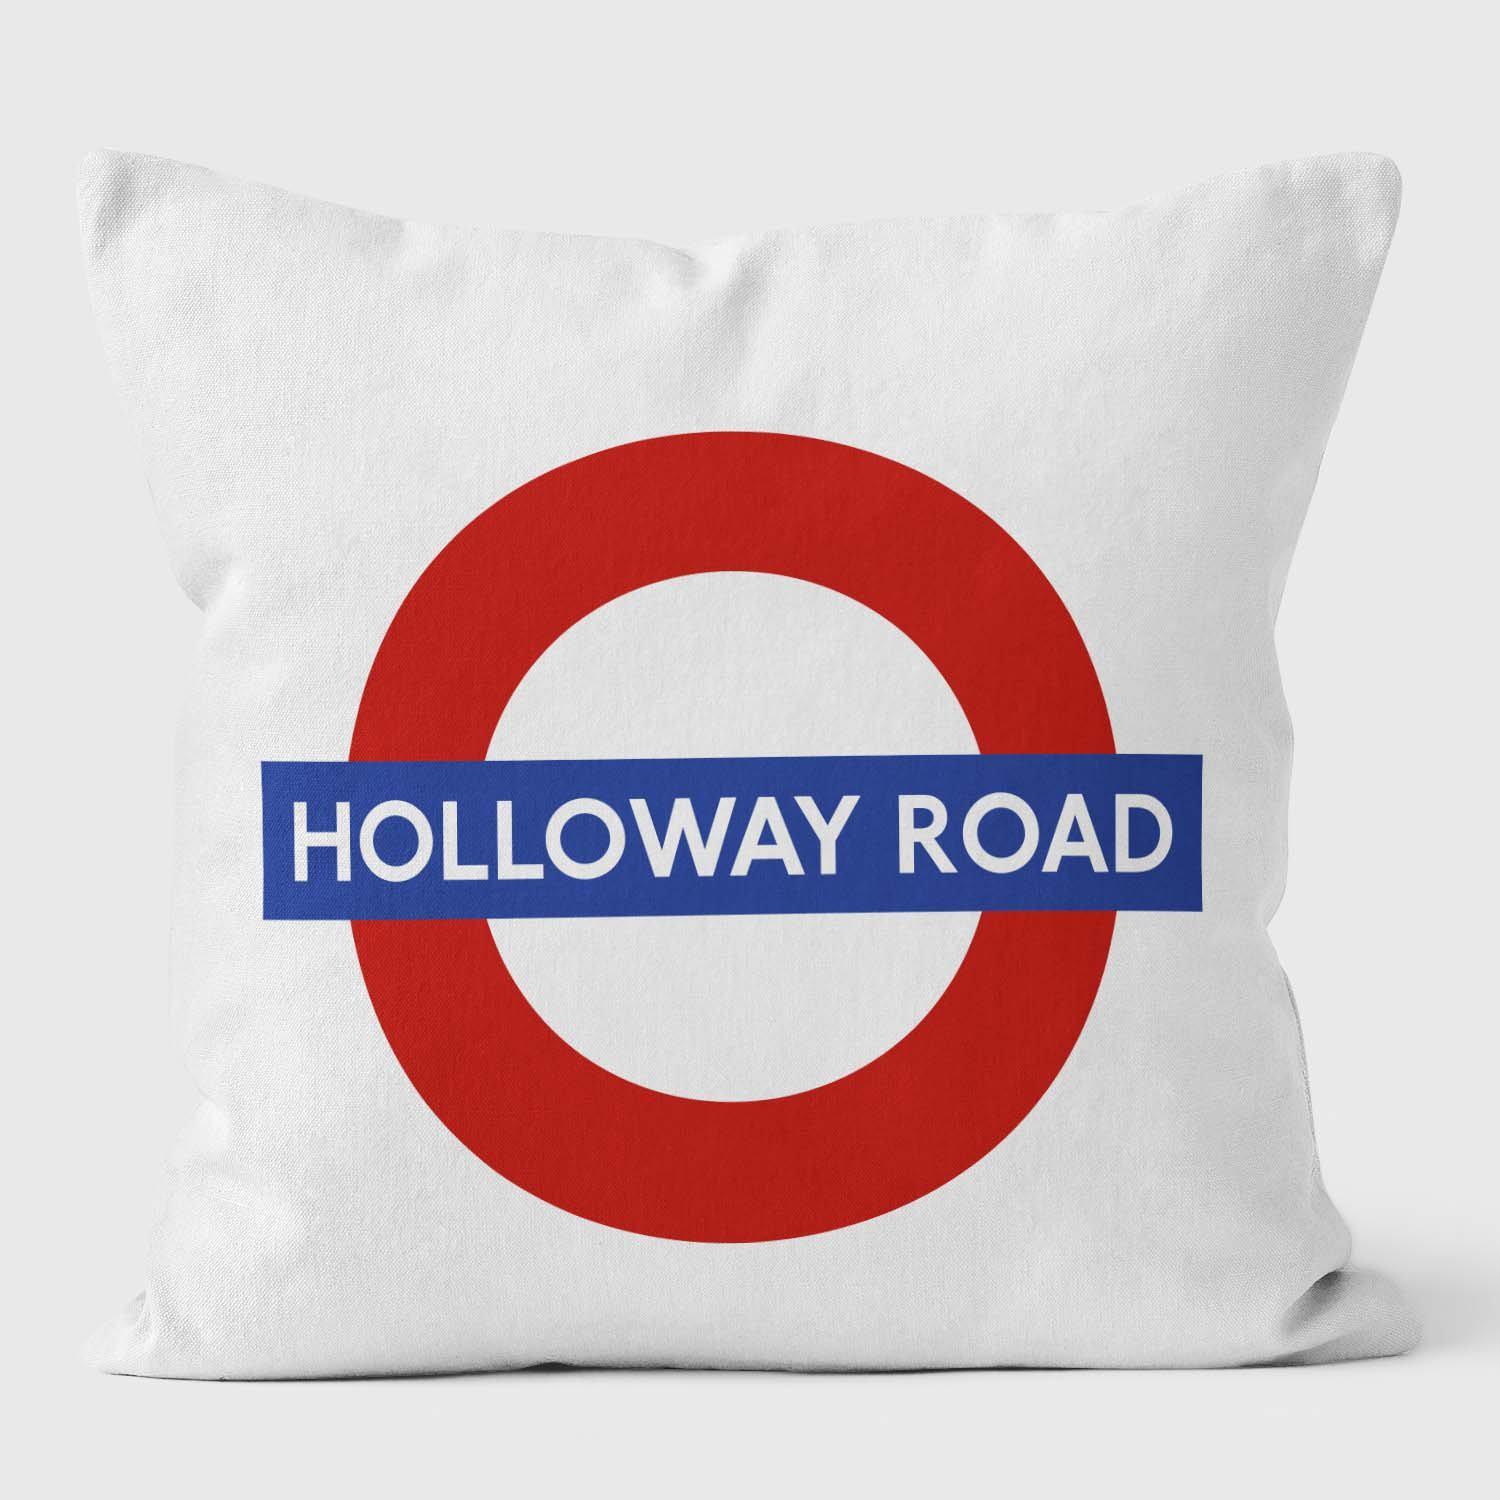 Holloway Road London Underground Tube Station Roundel Cushion - Handmade Cushions UK - WeLoveCushions